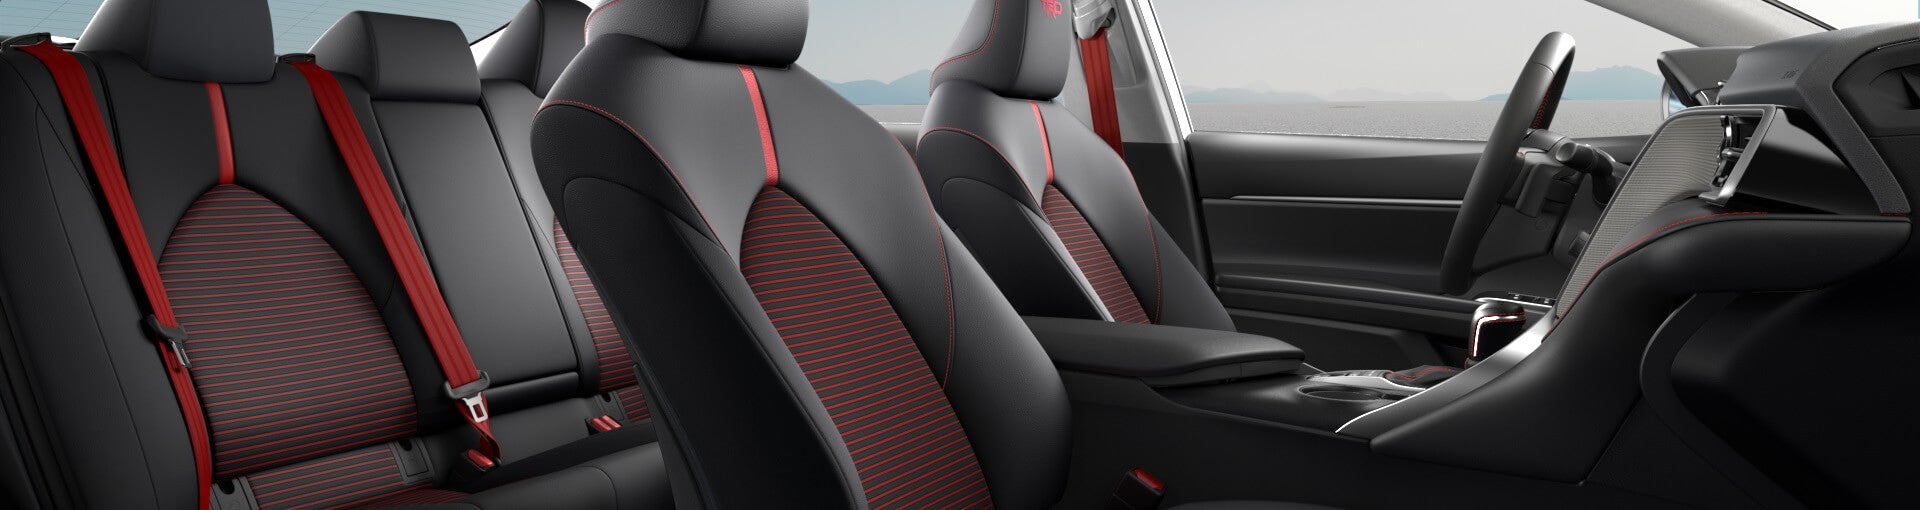 Toyota RAV4 Interior Seats